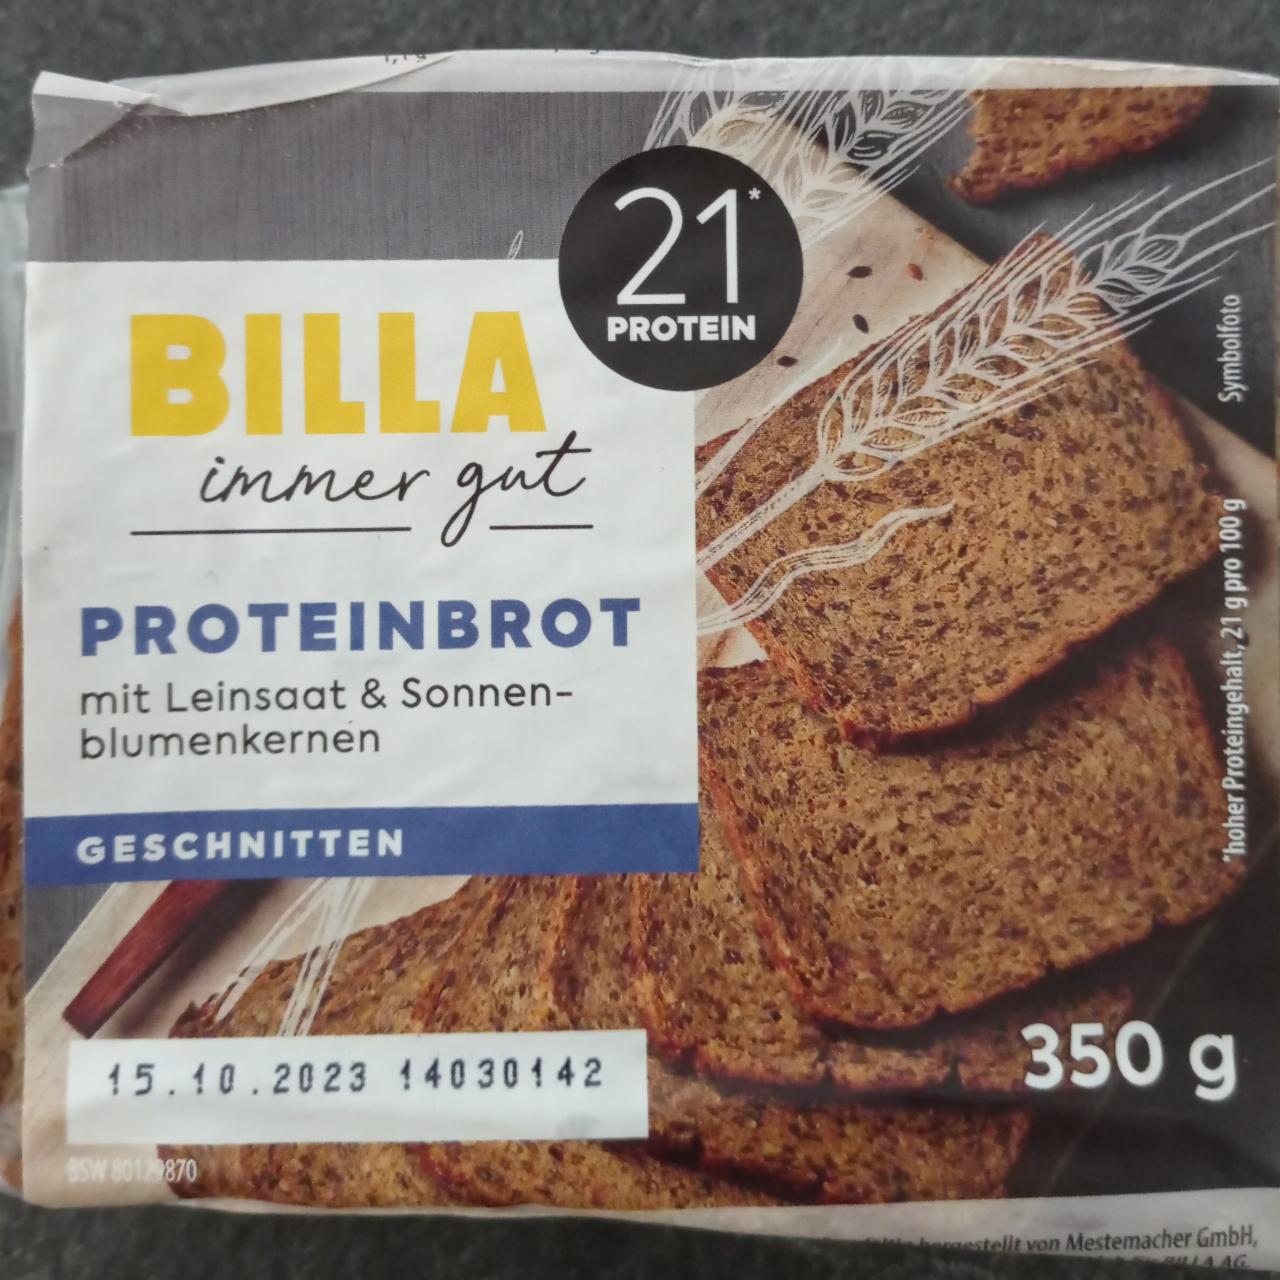 Фото - Хліб протеїновий Proteinbrot Billa